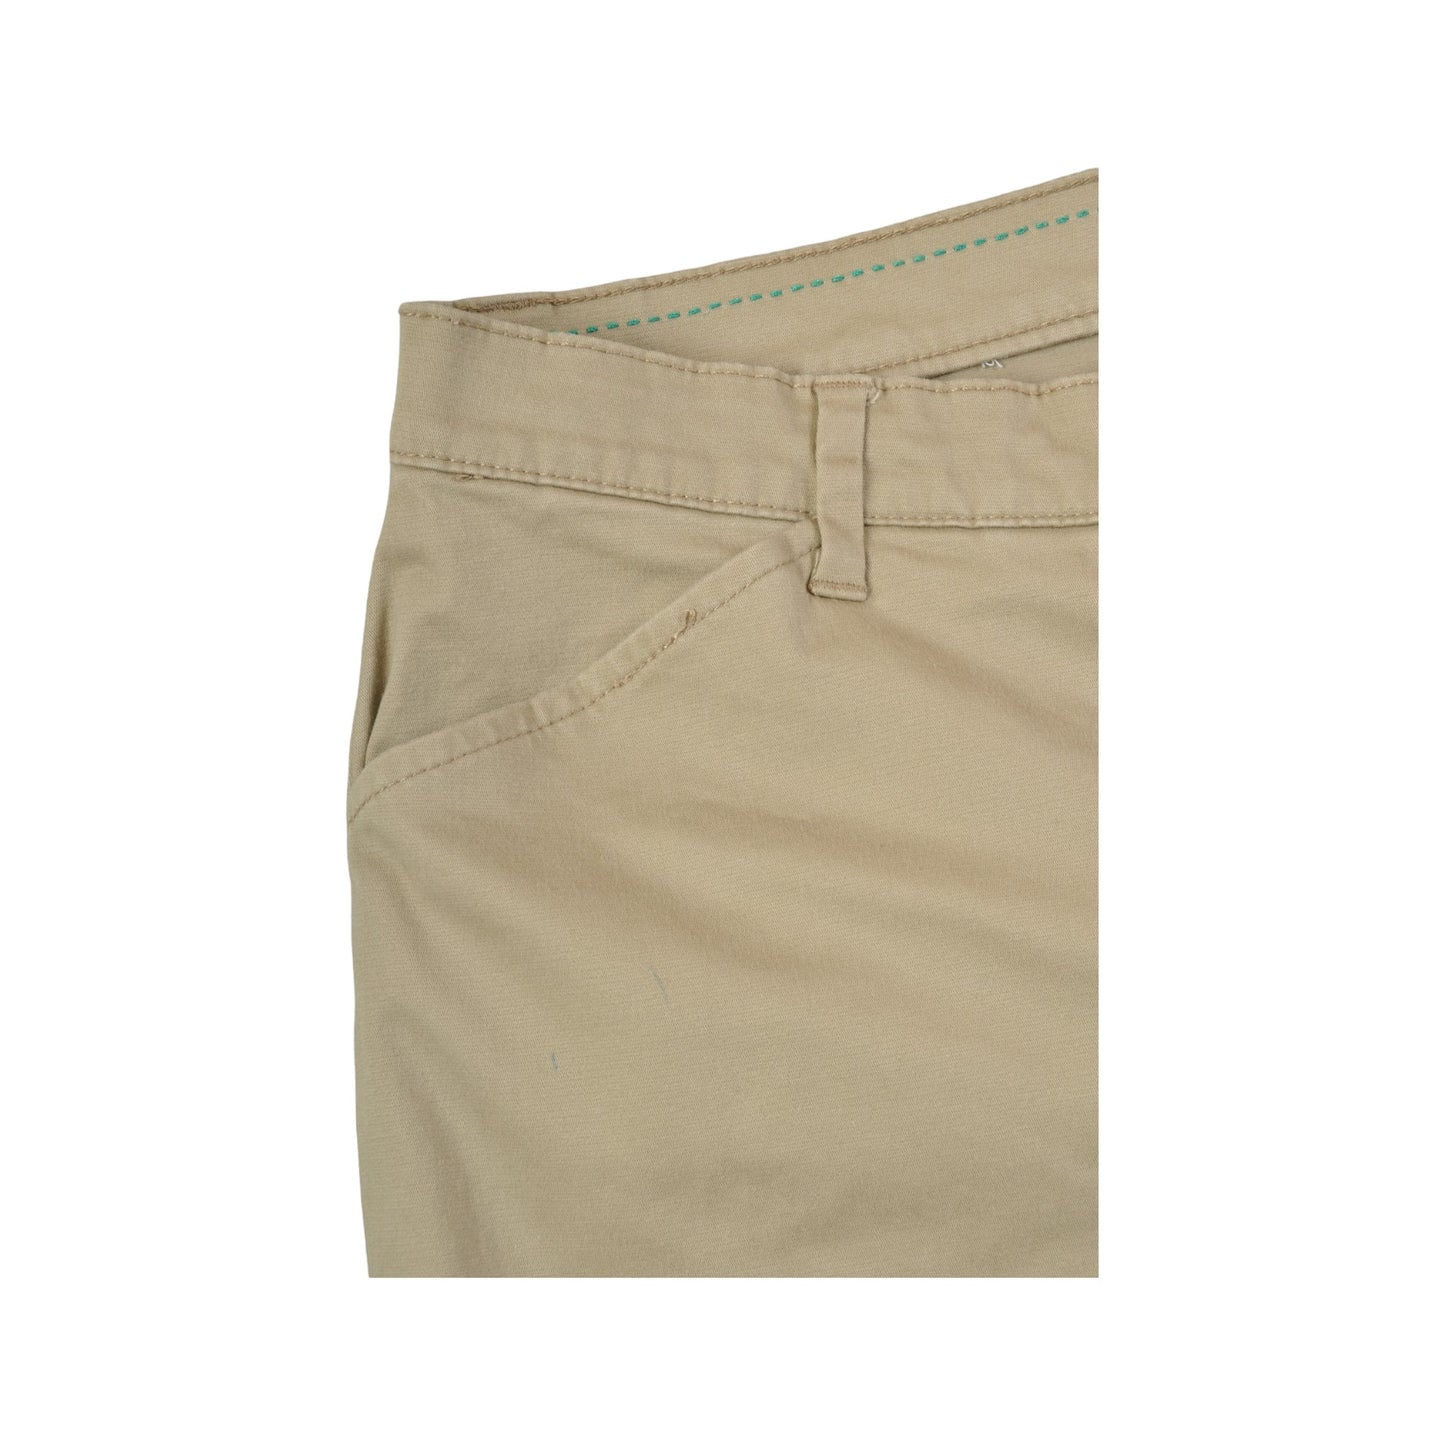 Vintage Lee Y2K Chinos Cotton Pants Beige Ladies W38 L30